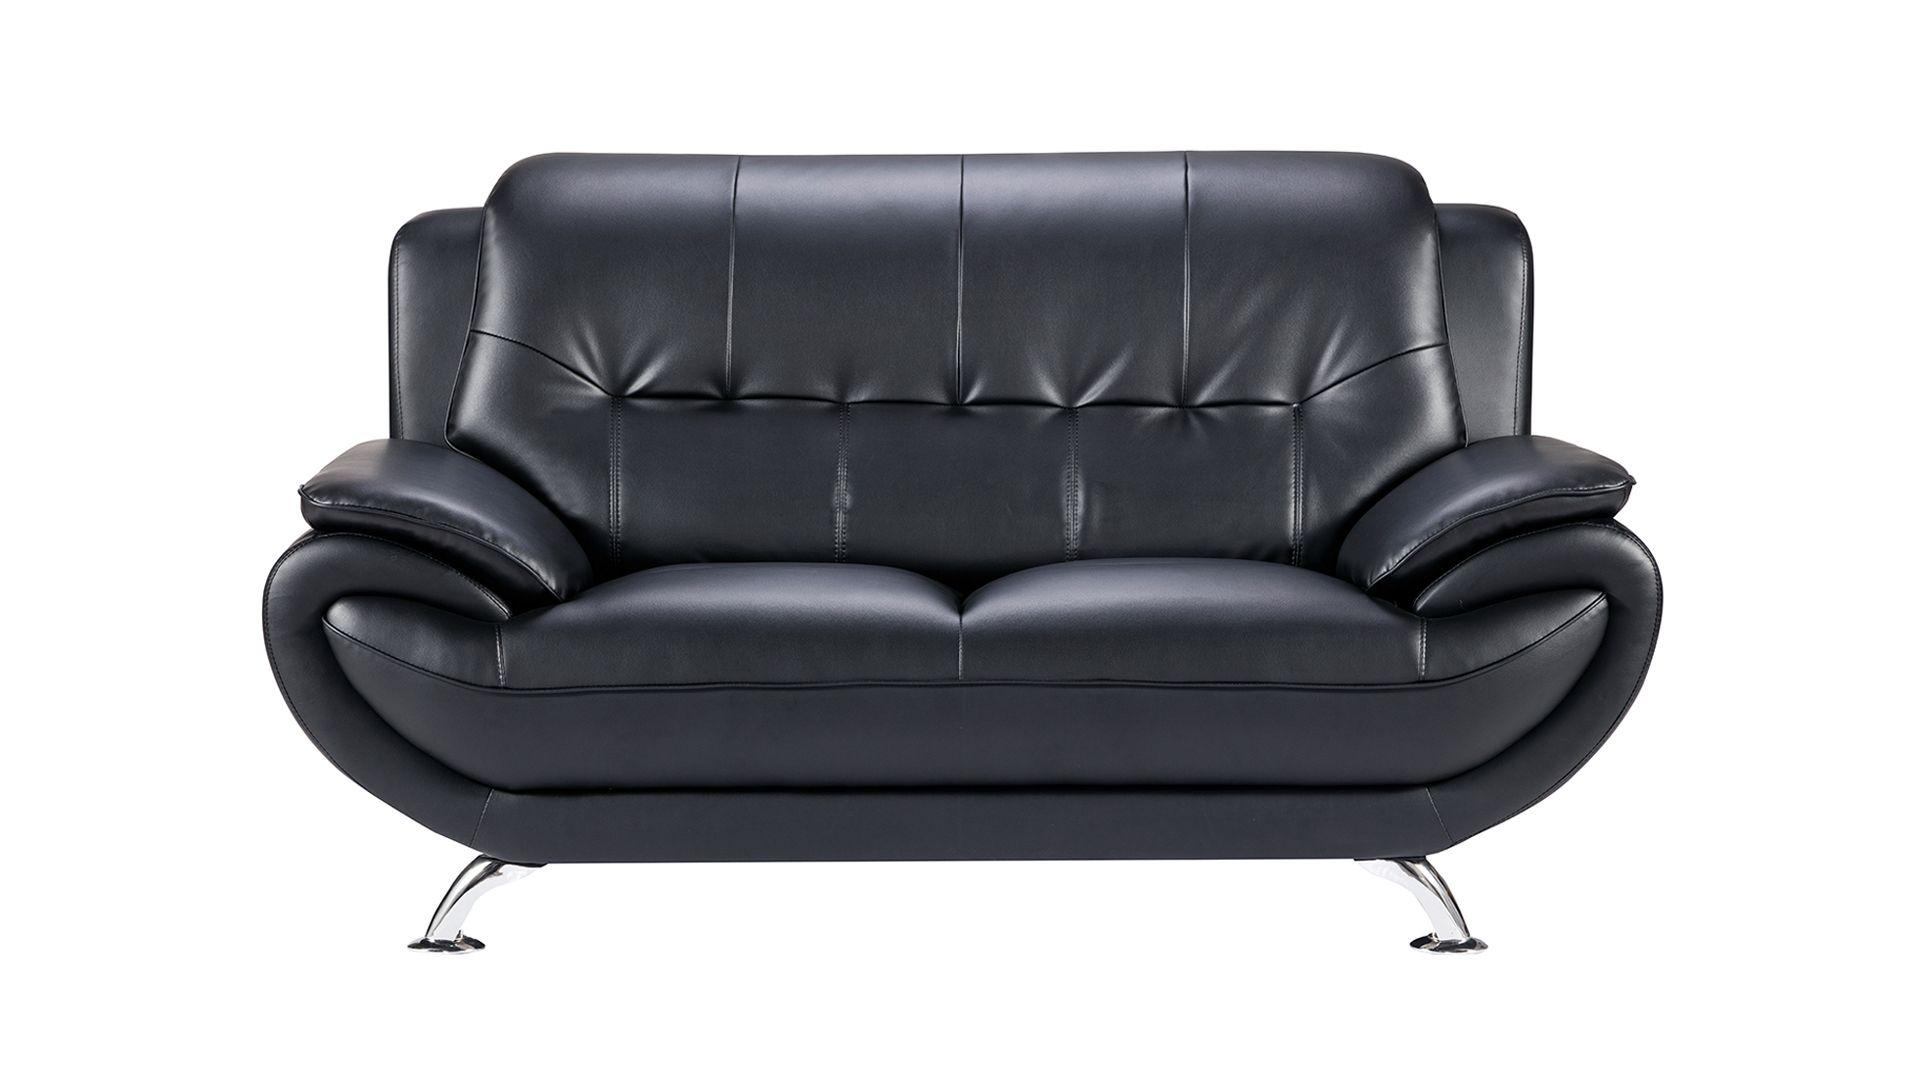 

                    
American Eagle Furniture AE208-BK-3PC Sofa Set Black Faux Leather Purchase 
